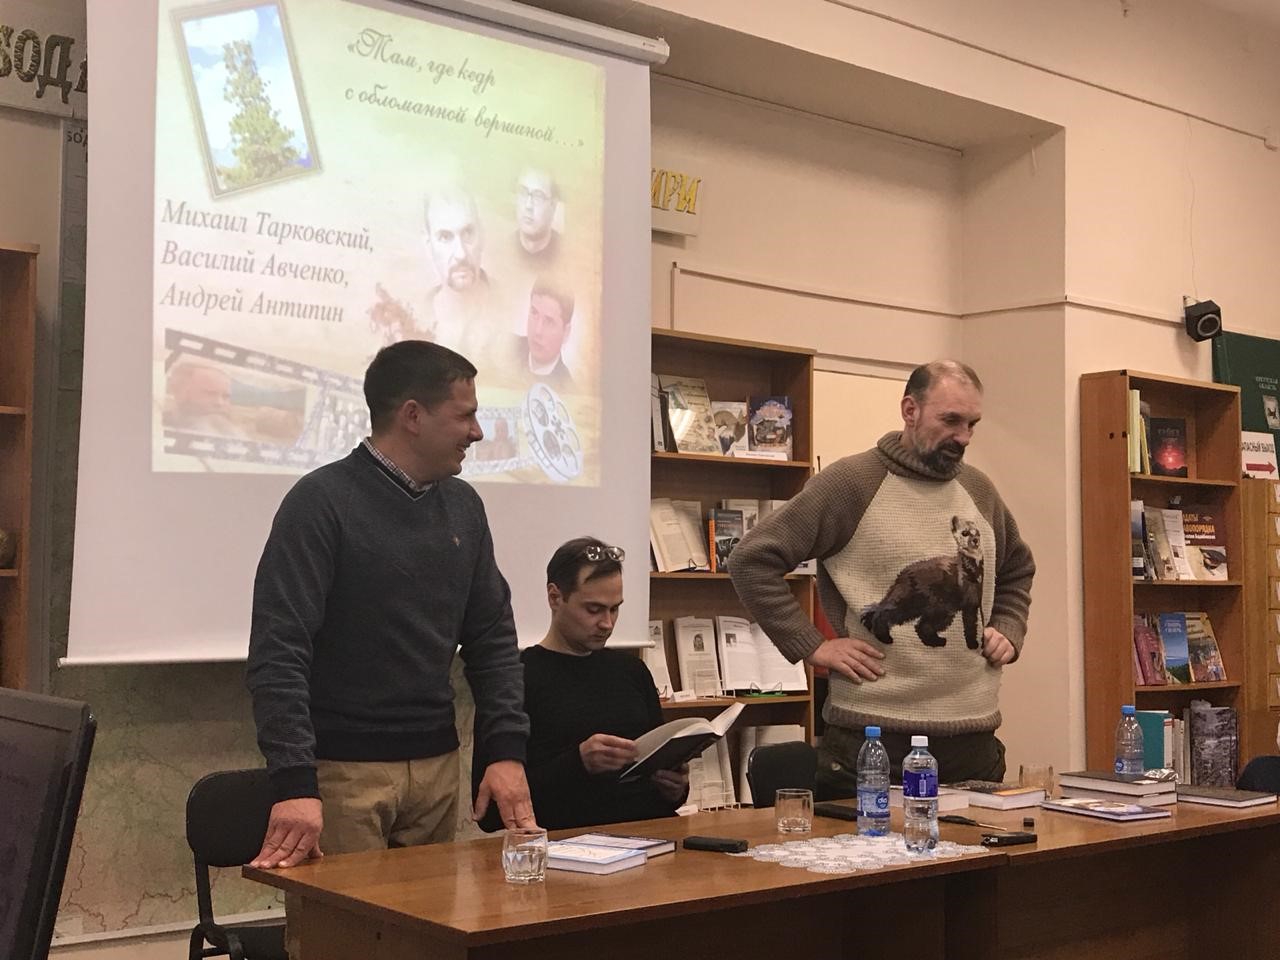 С писателями Андреем Антипиным и Василием Авченко в библиотеке г. Бодайбо. 2018 г.